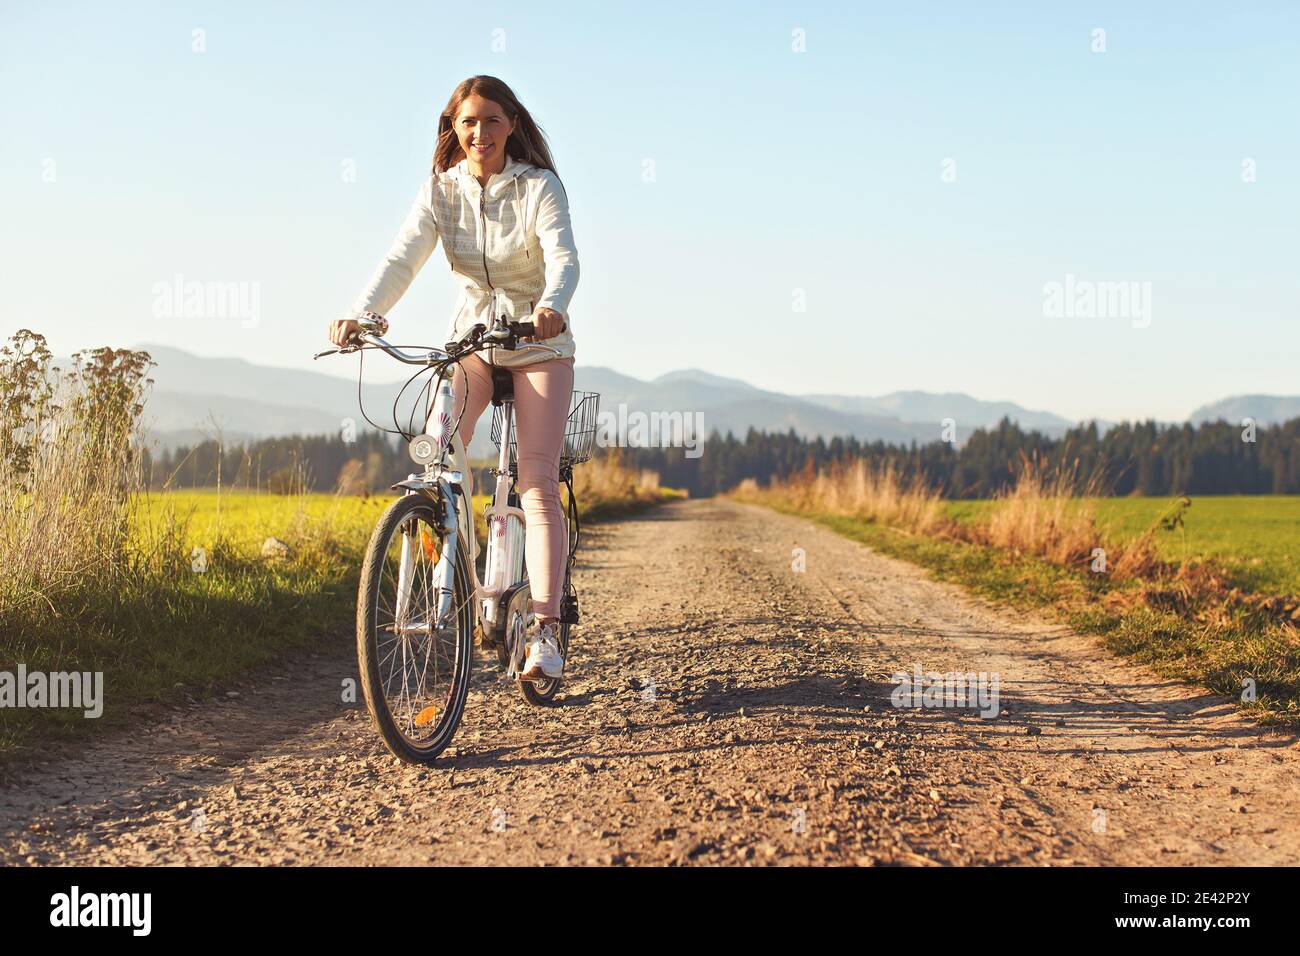 Junge Frau fährt Fahrrad auf staubigen Straße in Richtung Kamera, Nachmittag Sonne scheint auf Felder und Wald im Hintergrund Stockfoto